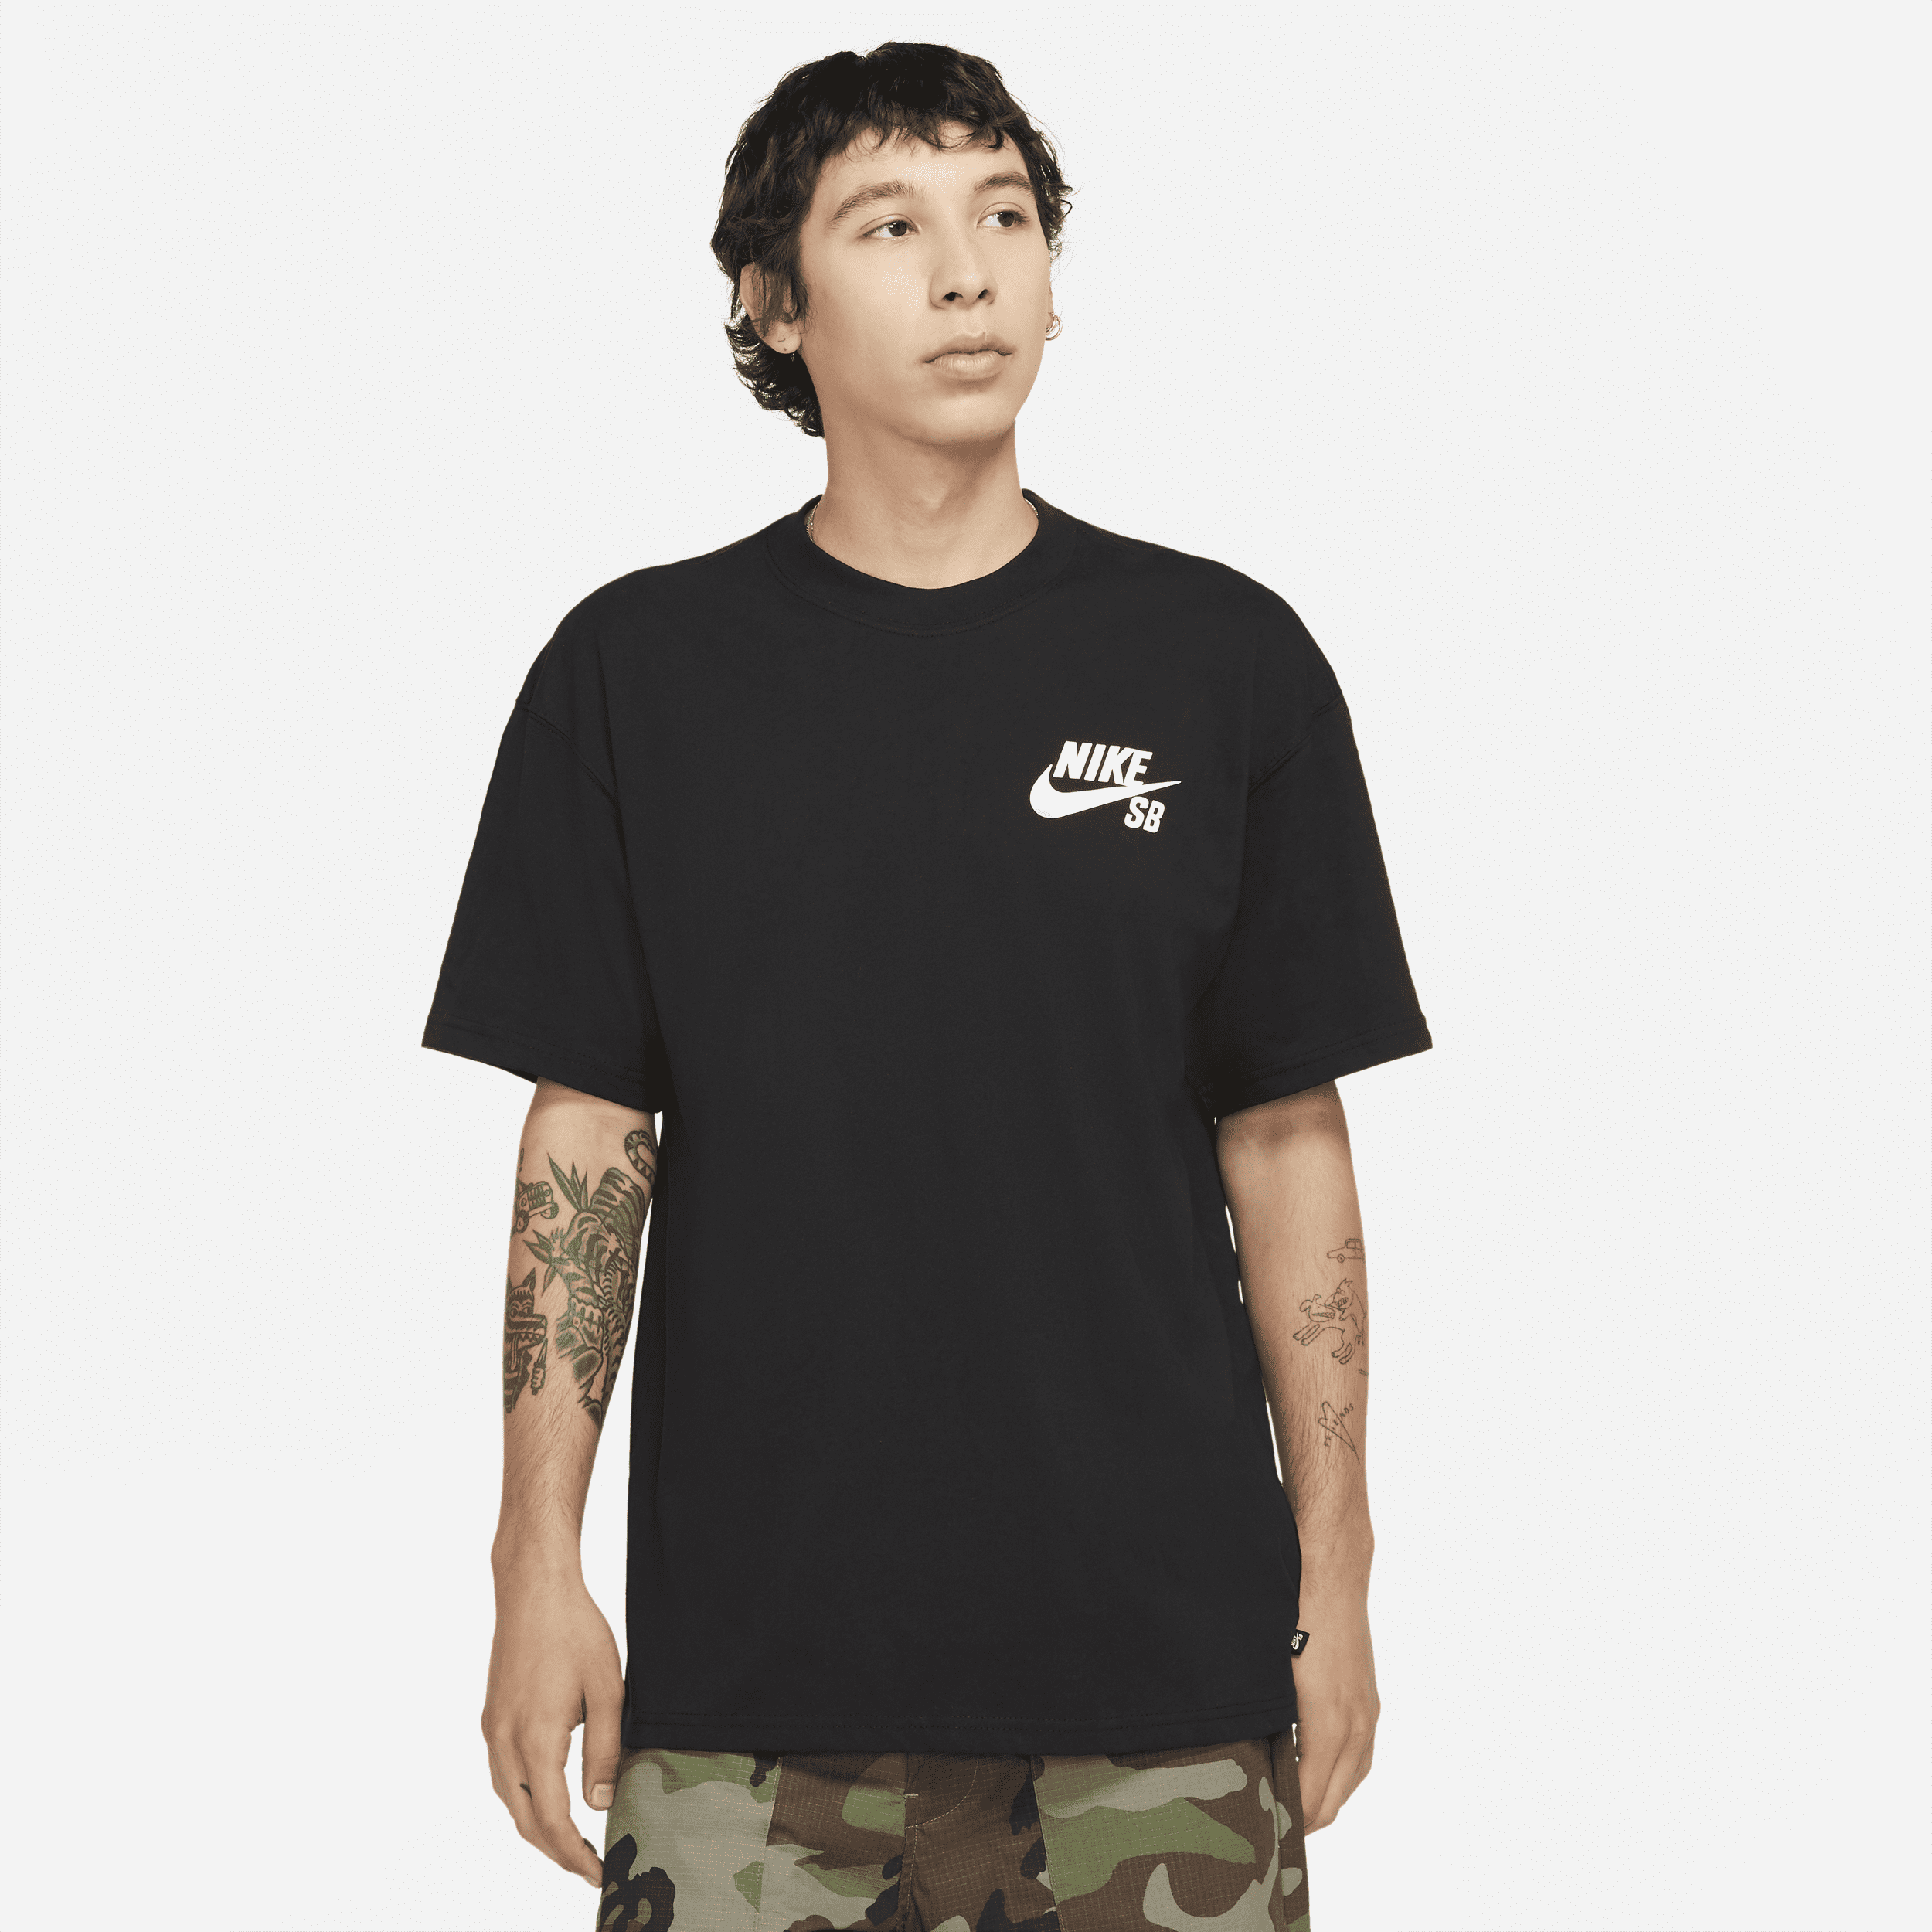 Nike SB-skater-T-shirt med logo - sort